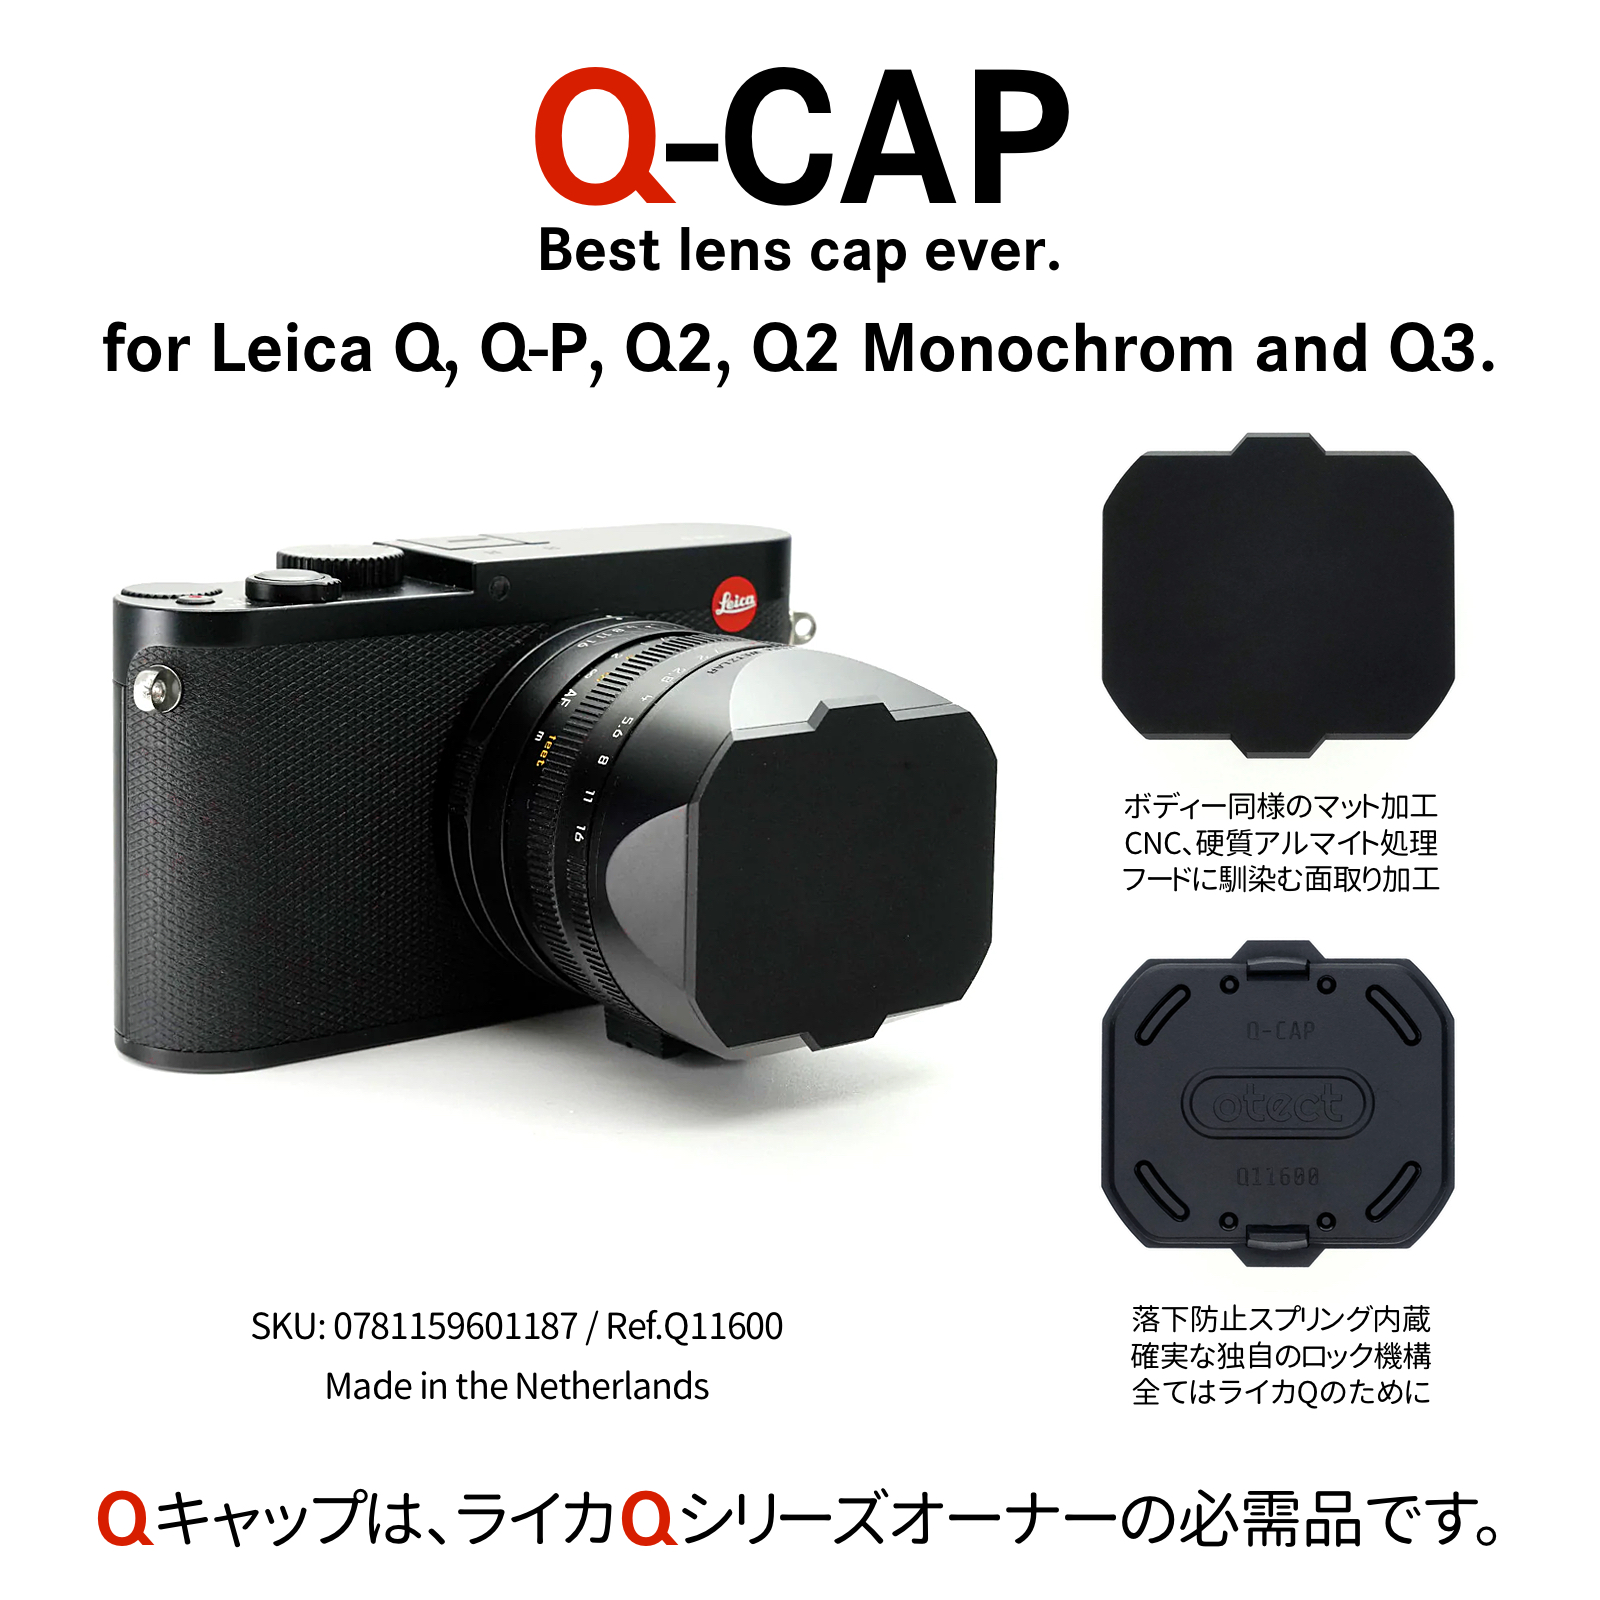 【Q-CAP Ver.2】について。